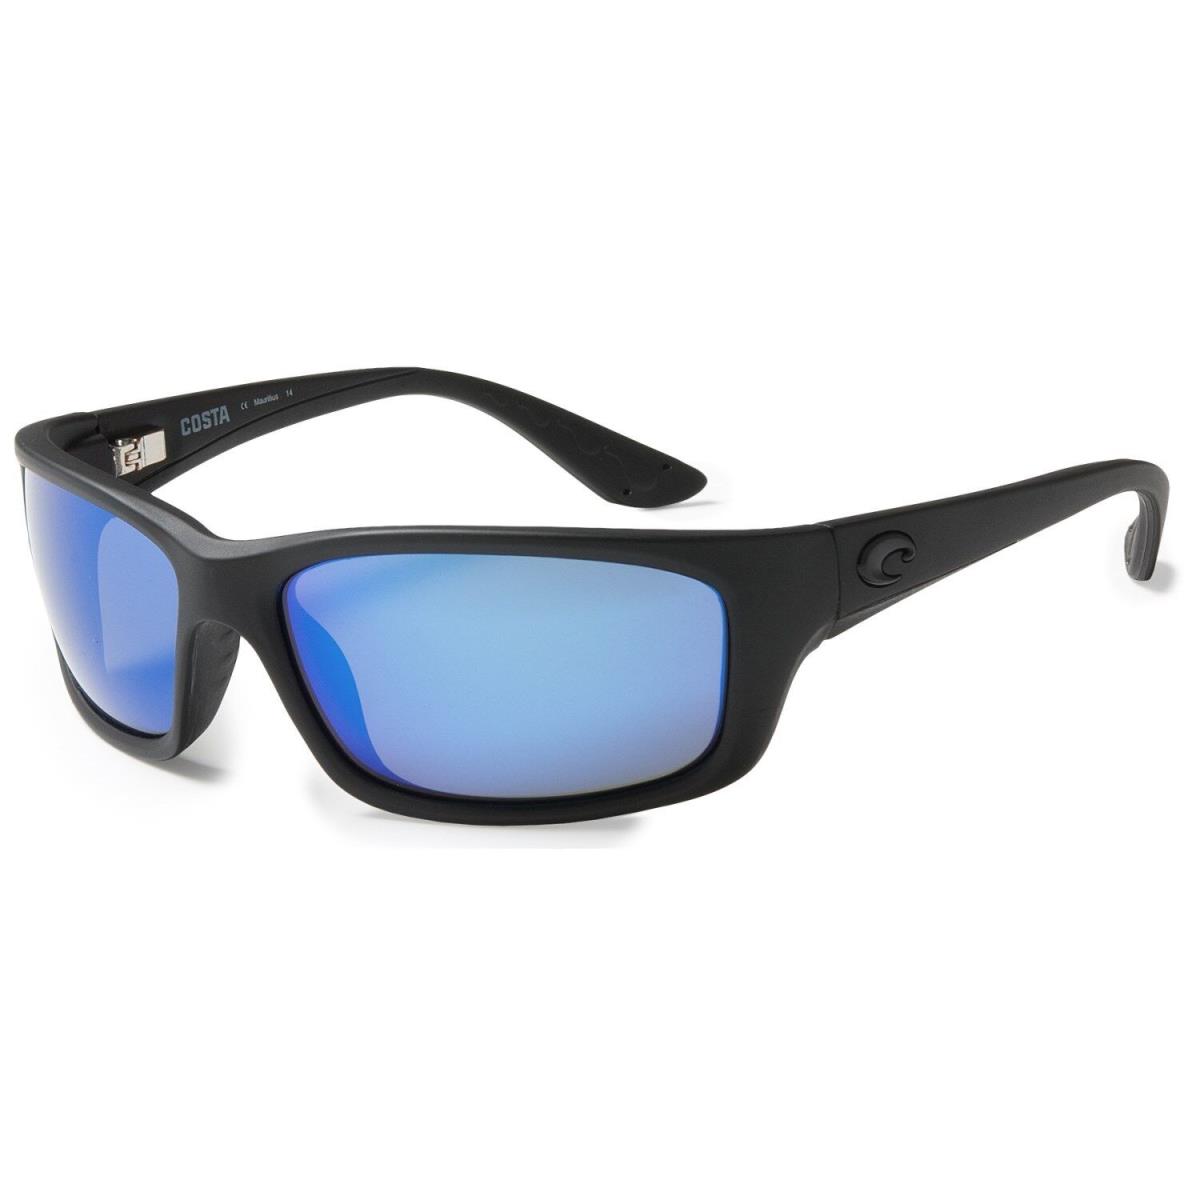 NW Costa Del Mar Jose Black Polarized Blue Mirrror 400G Sunglasses